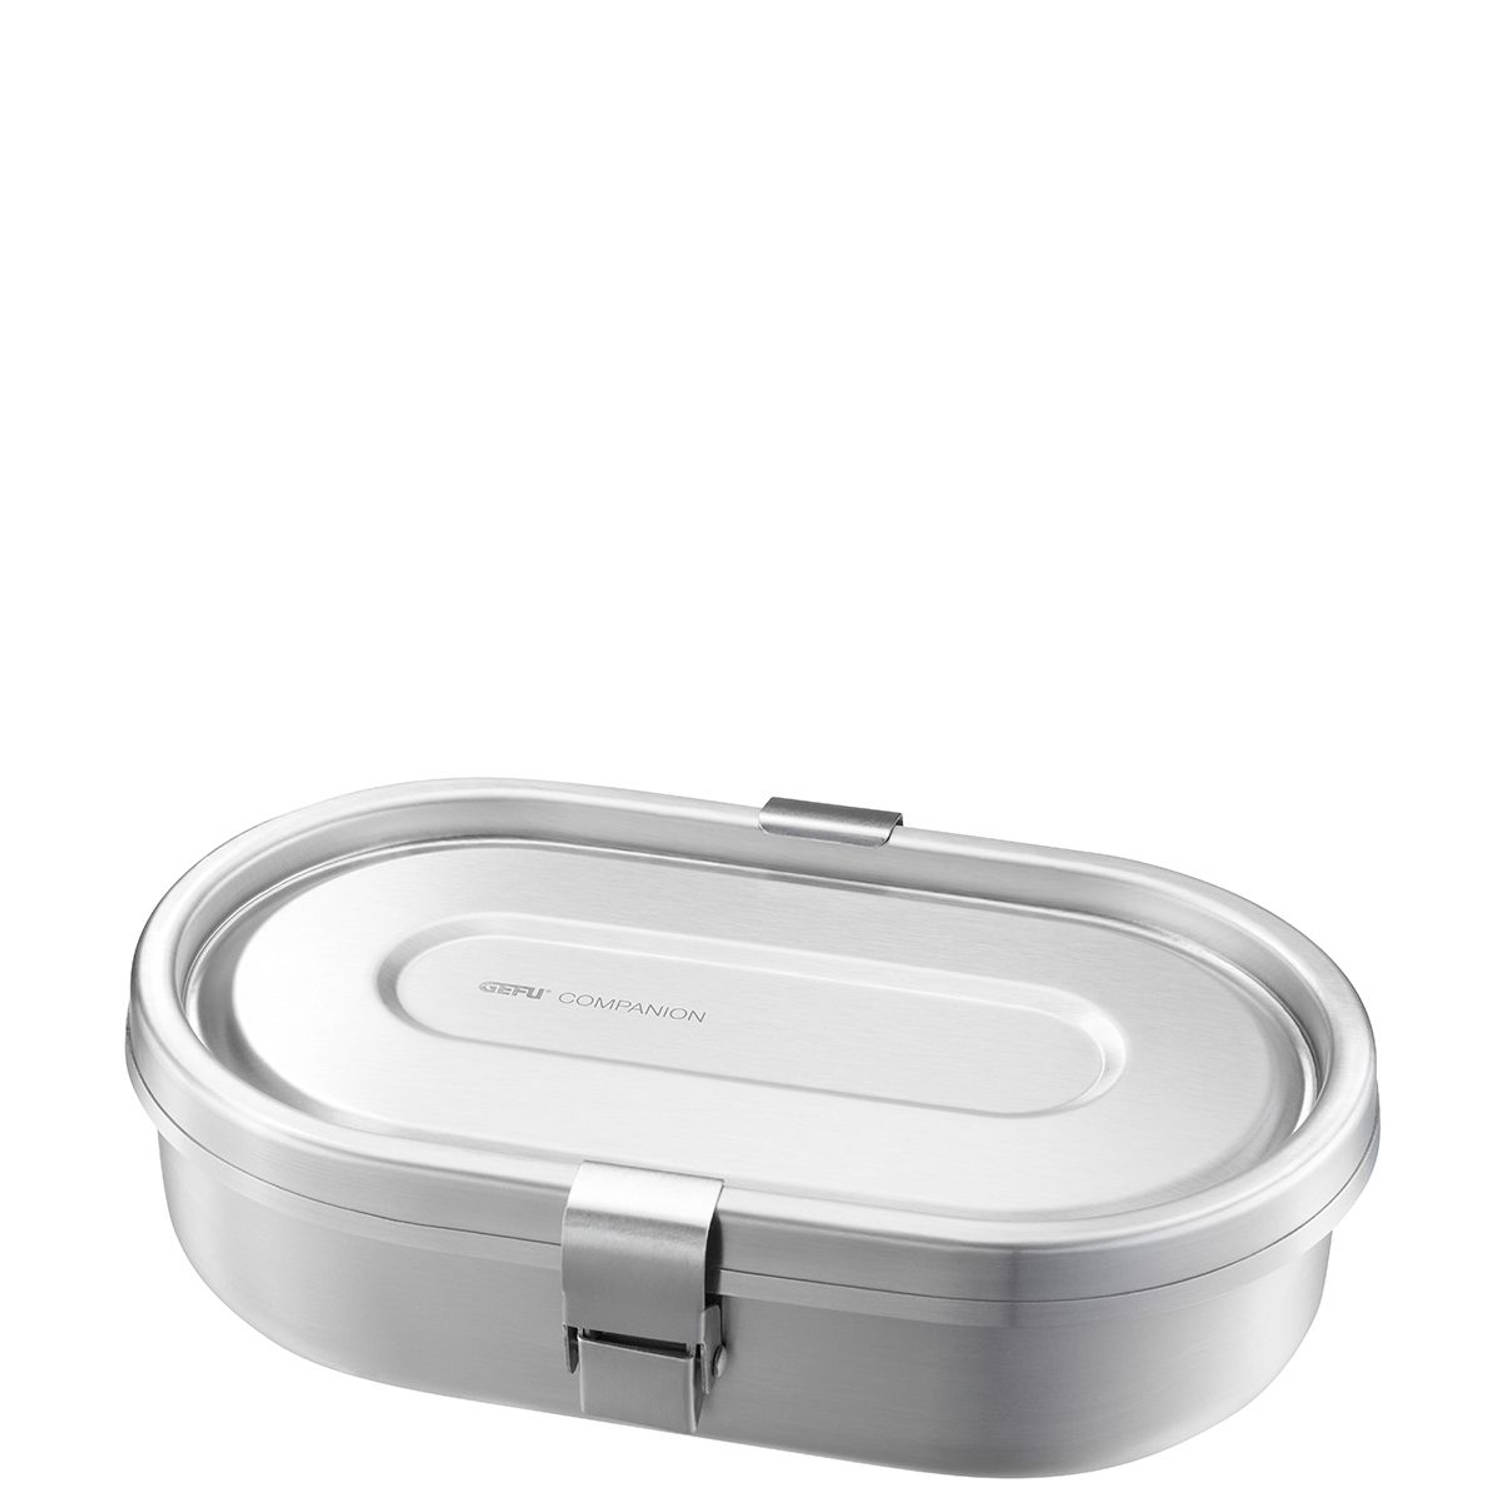 GEFU - Lunchbox met 2 compartimenten, 700 ml, RVS, 20 jaar garantie - GEFU COMPANION